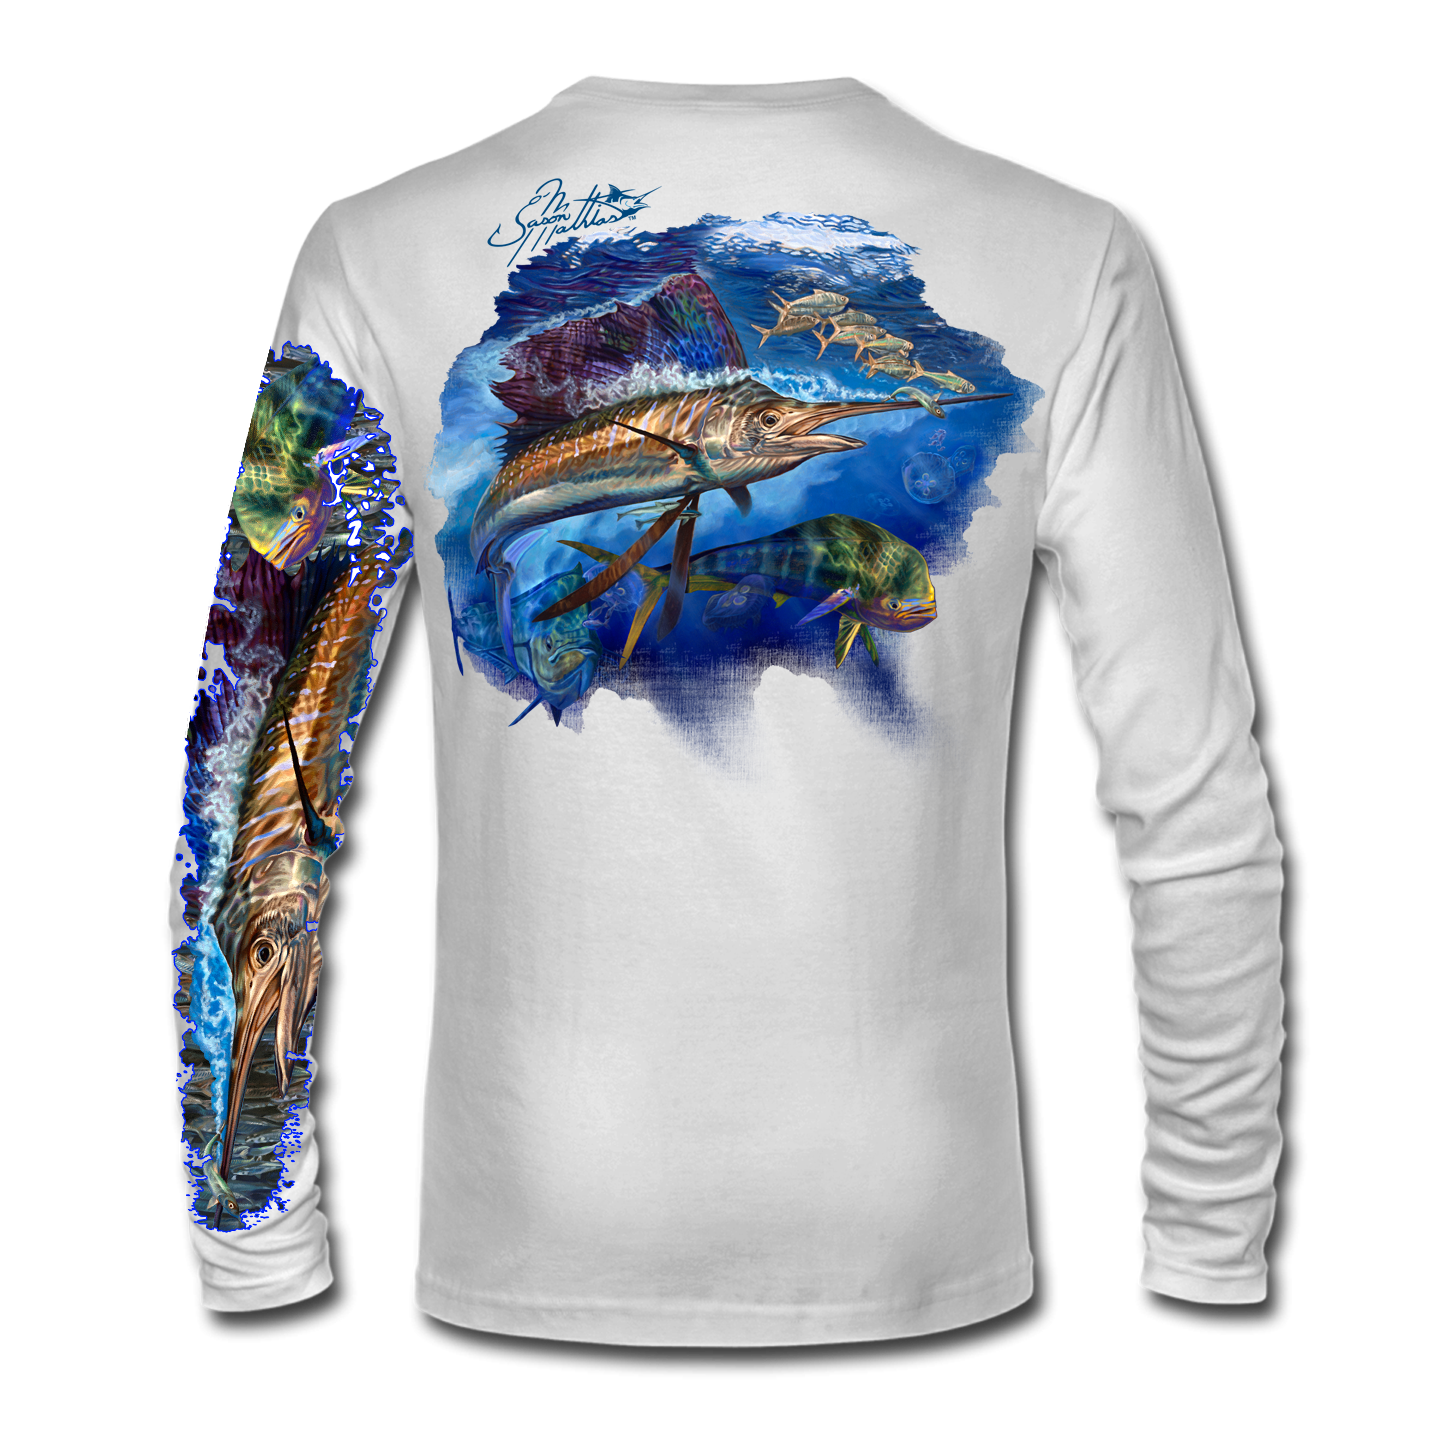 sailfish-mahi-shirt-jason-mathias-white.png